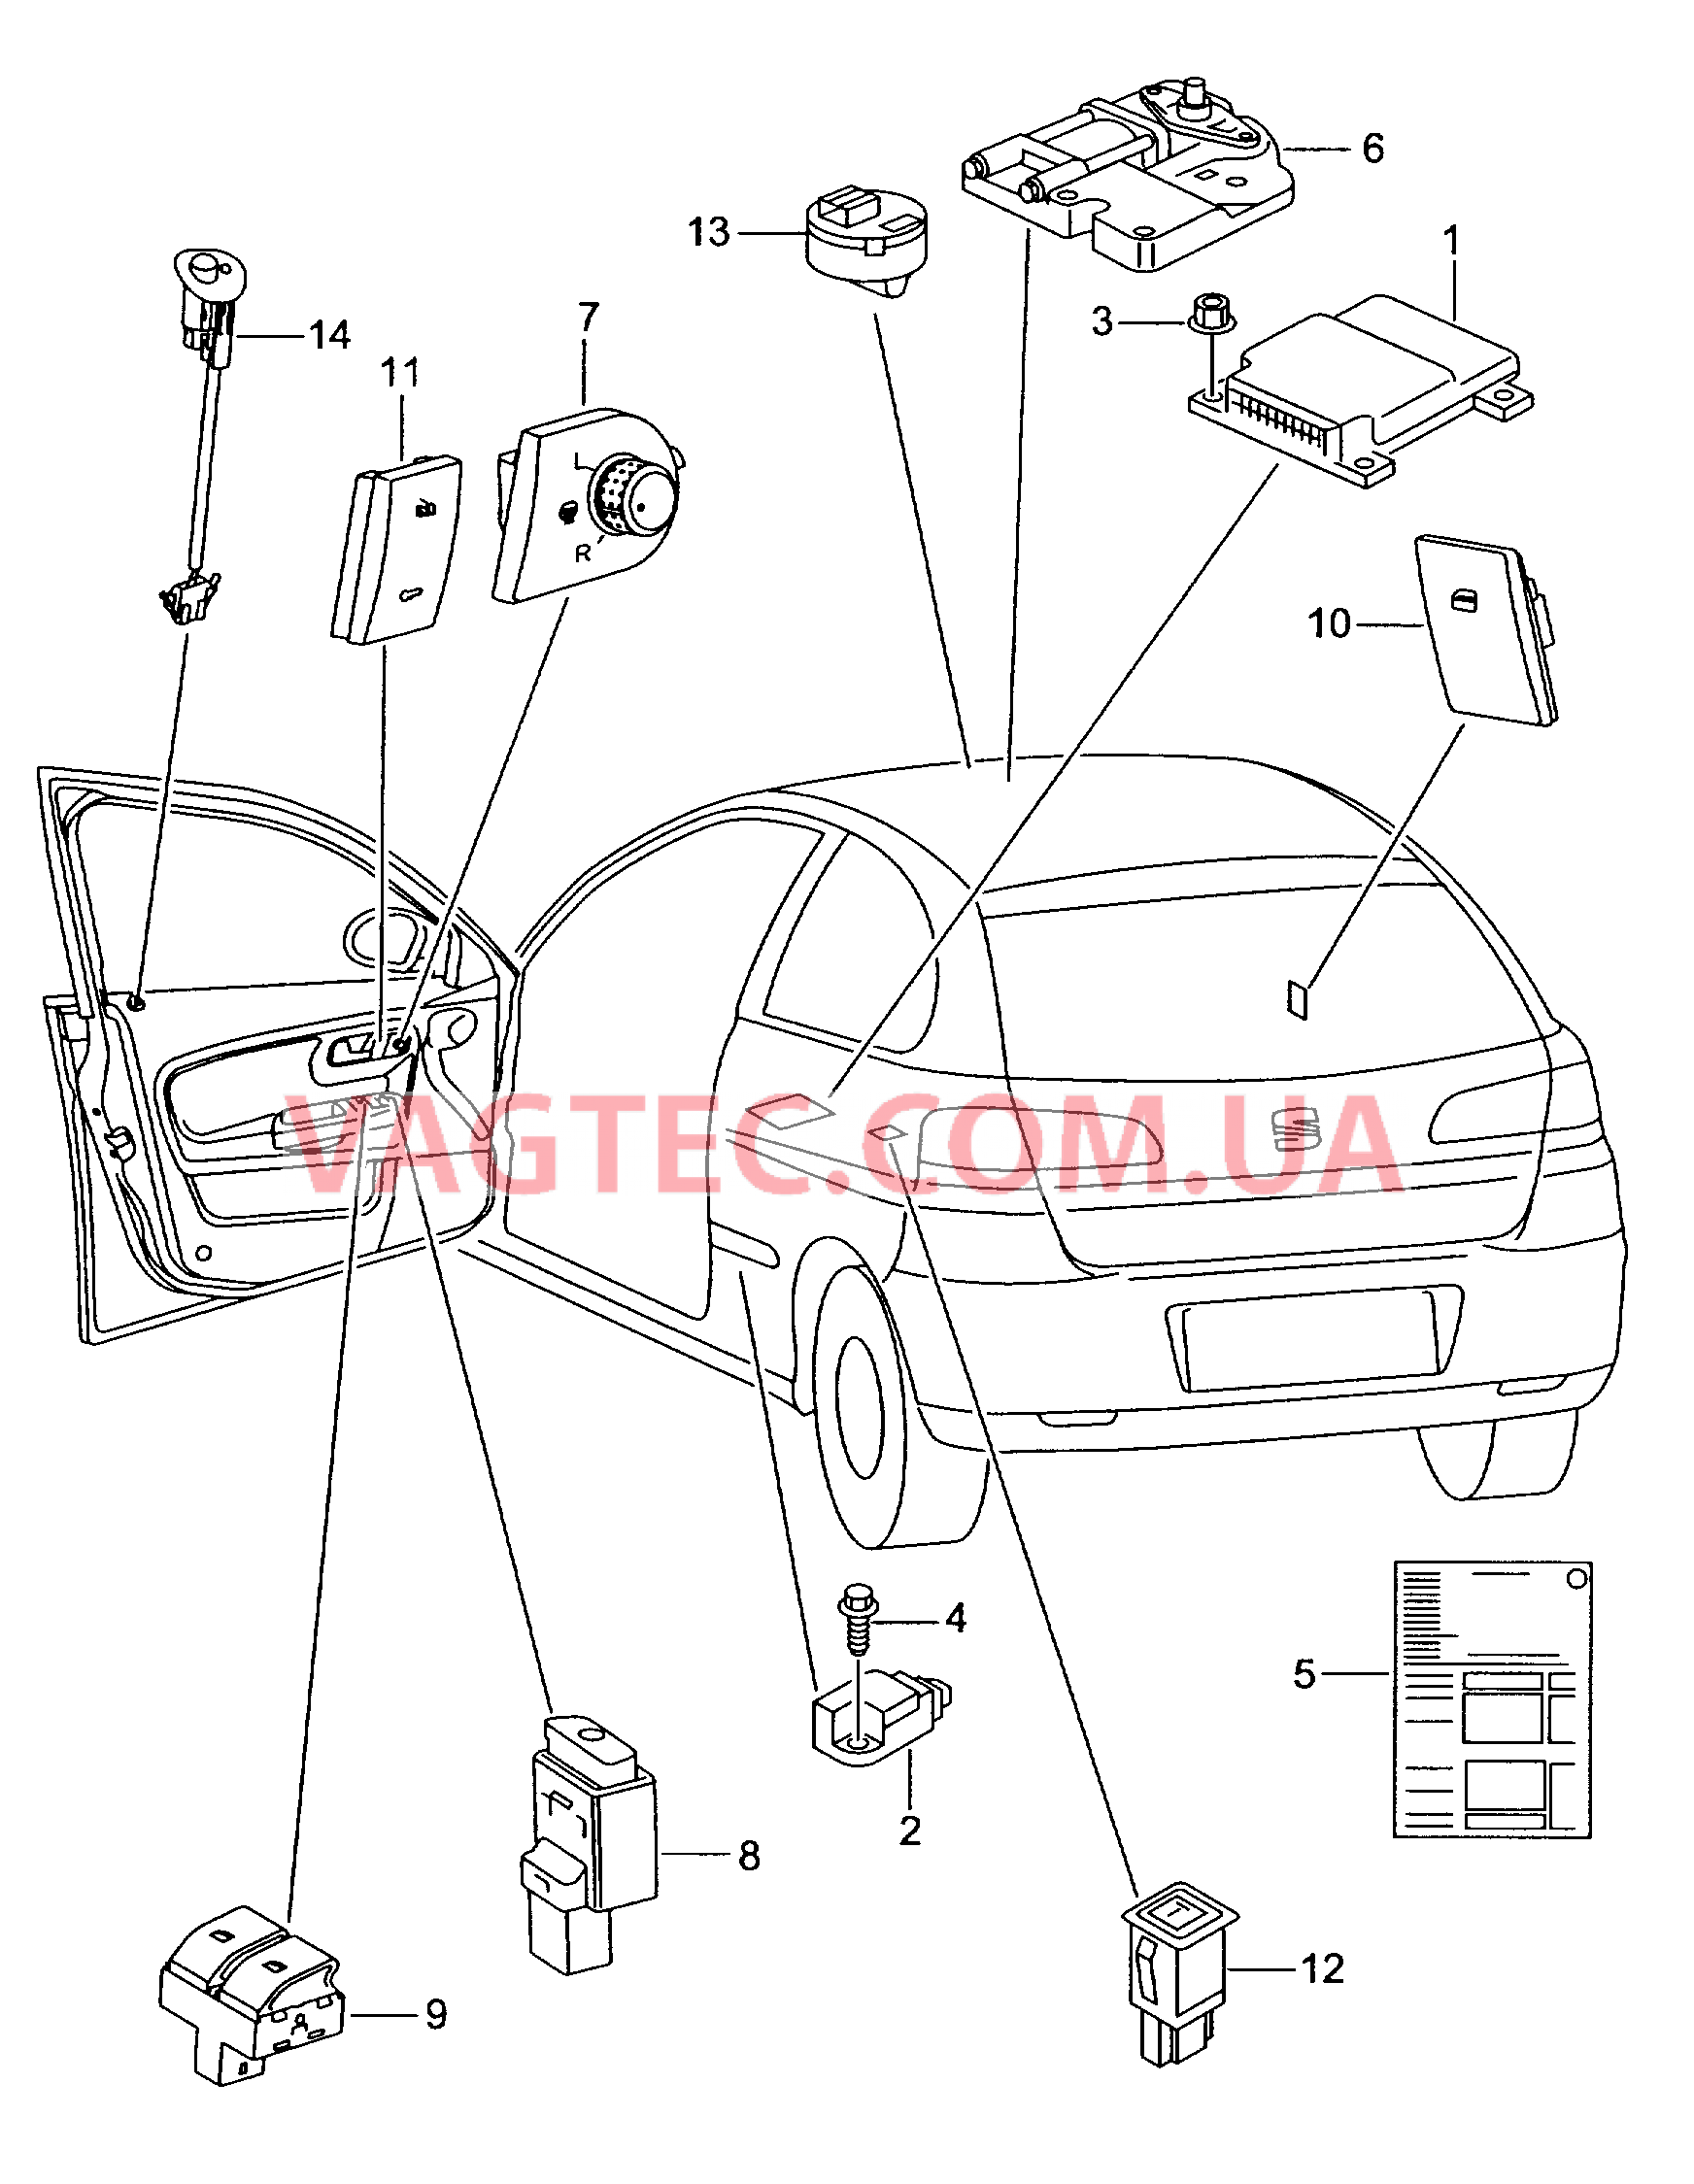 Электродетали для подуш.безоп. Мотор привода люка Выключатель в обивке двери Лампа, контрольная для противоугонной системы  для SEAT Ibiza 2003